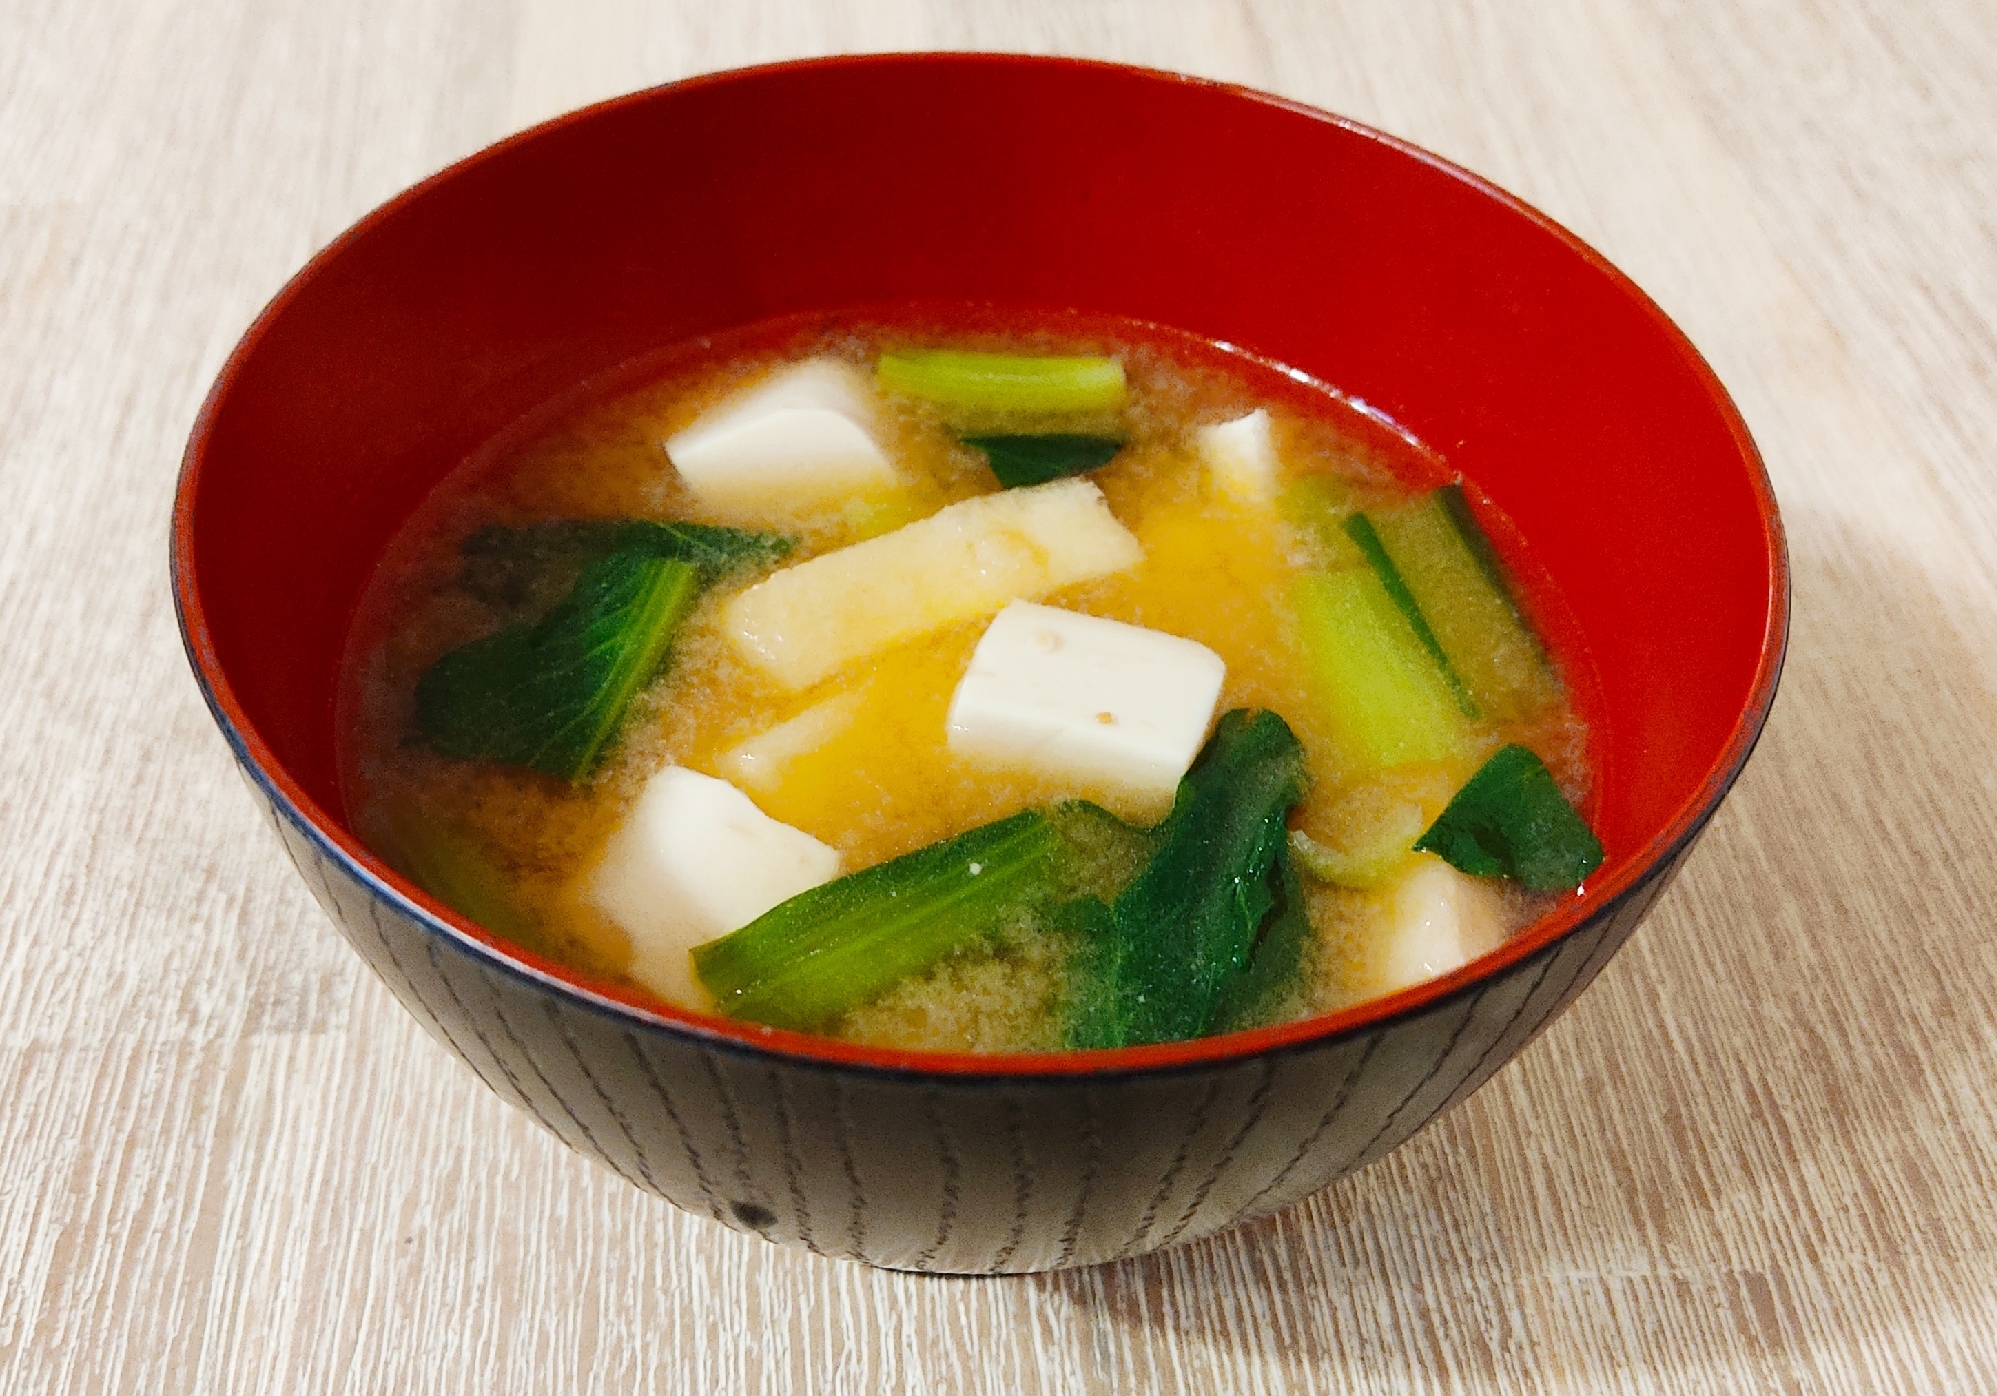 栄養たっぷり☆小松菜と豆腐と油揚げのお味噌汁